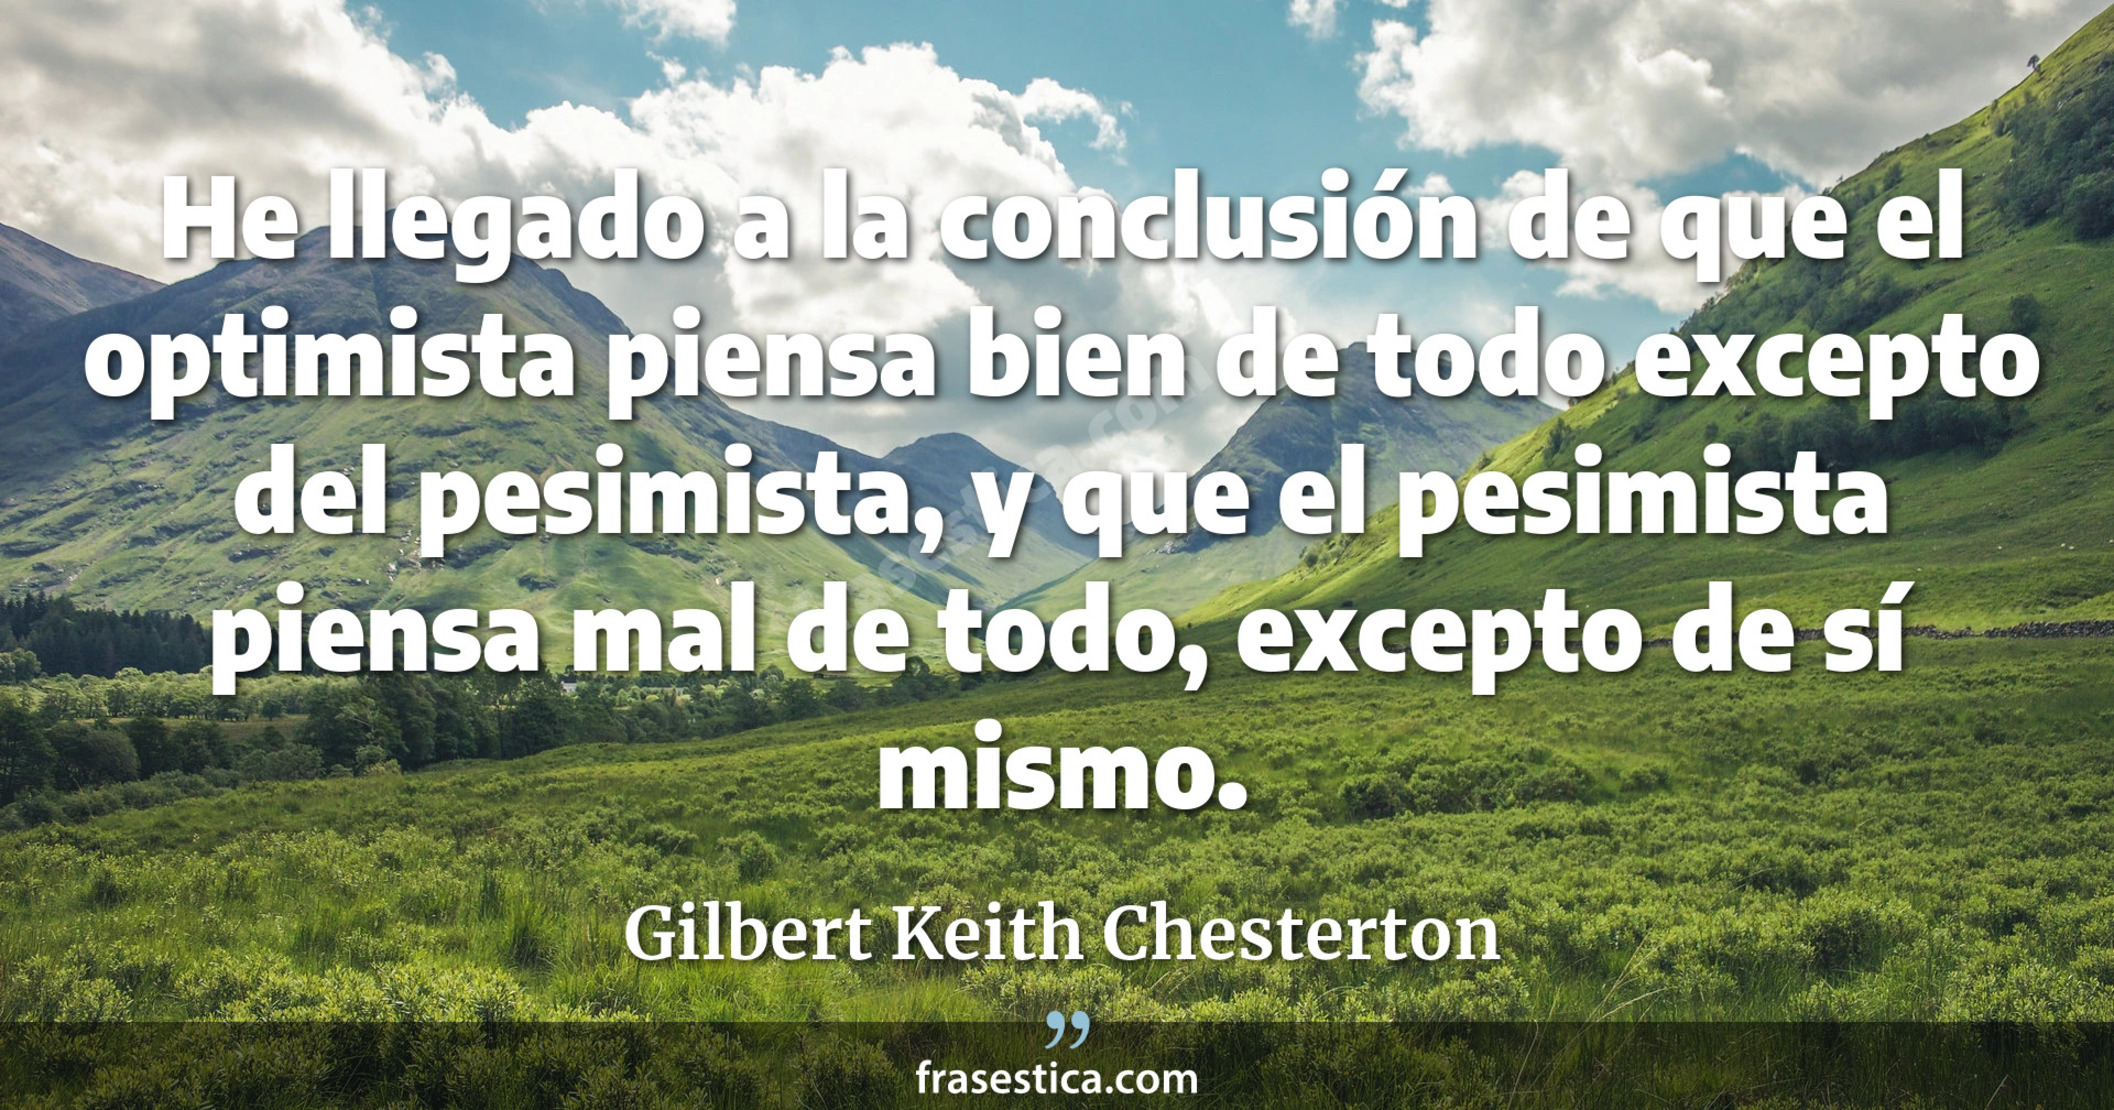 He llegado a la conclusión de que el optimista piensa bien de todo excepto del pesimista, y que el pesimista piensa mal de todo, excepto de sí mismo. - Gilbert Keith Chesterton